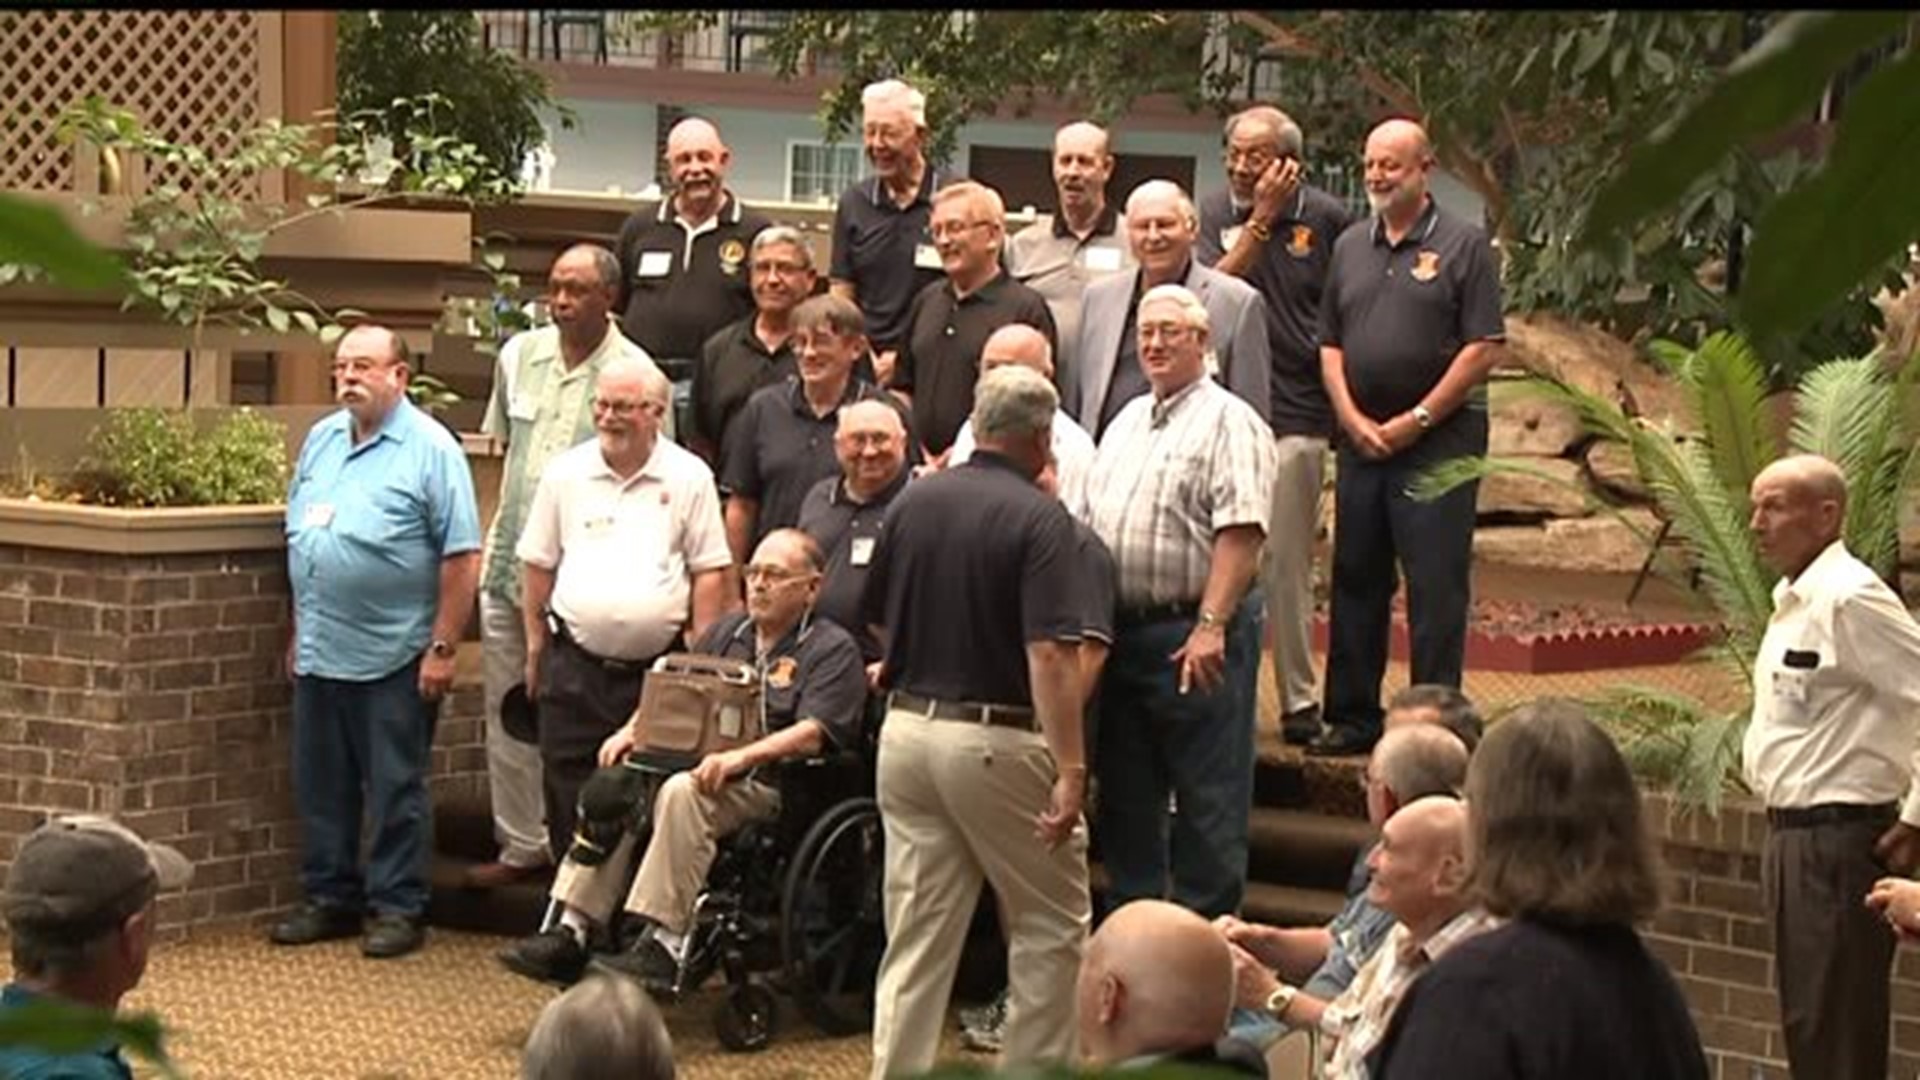 Vietnam veterans hold 50th anniversary reunion in New Cumberland